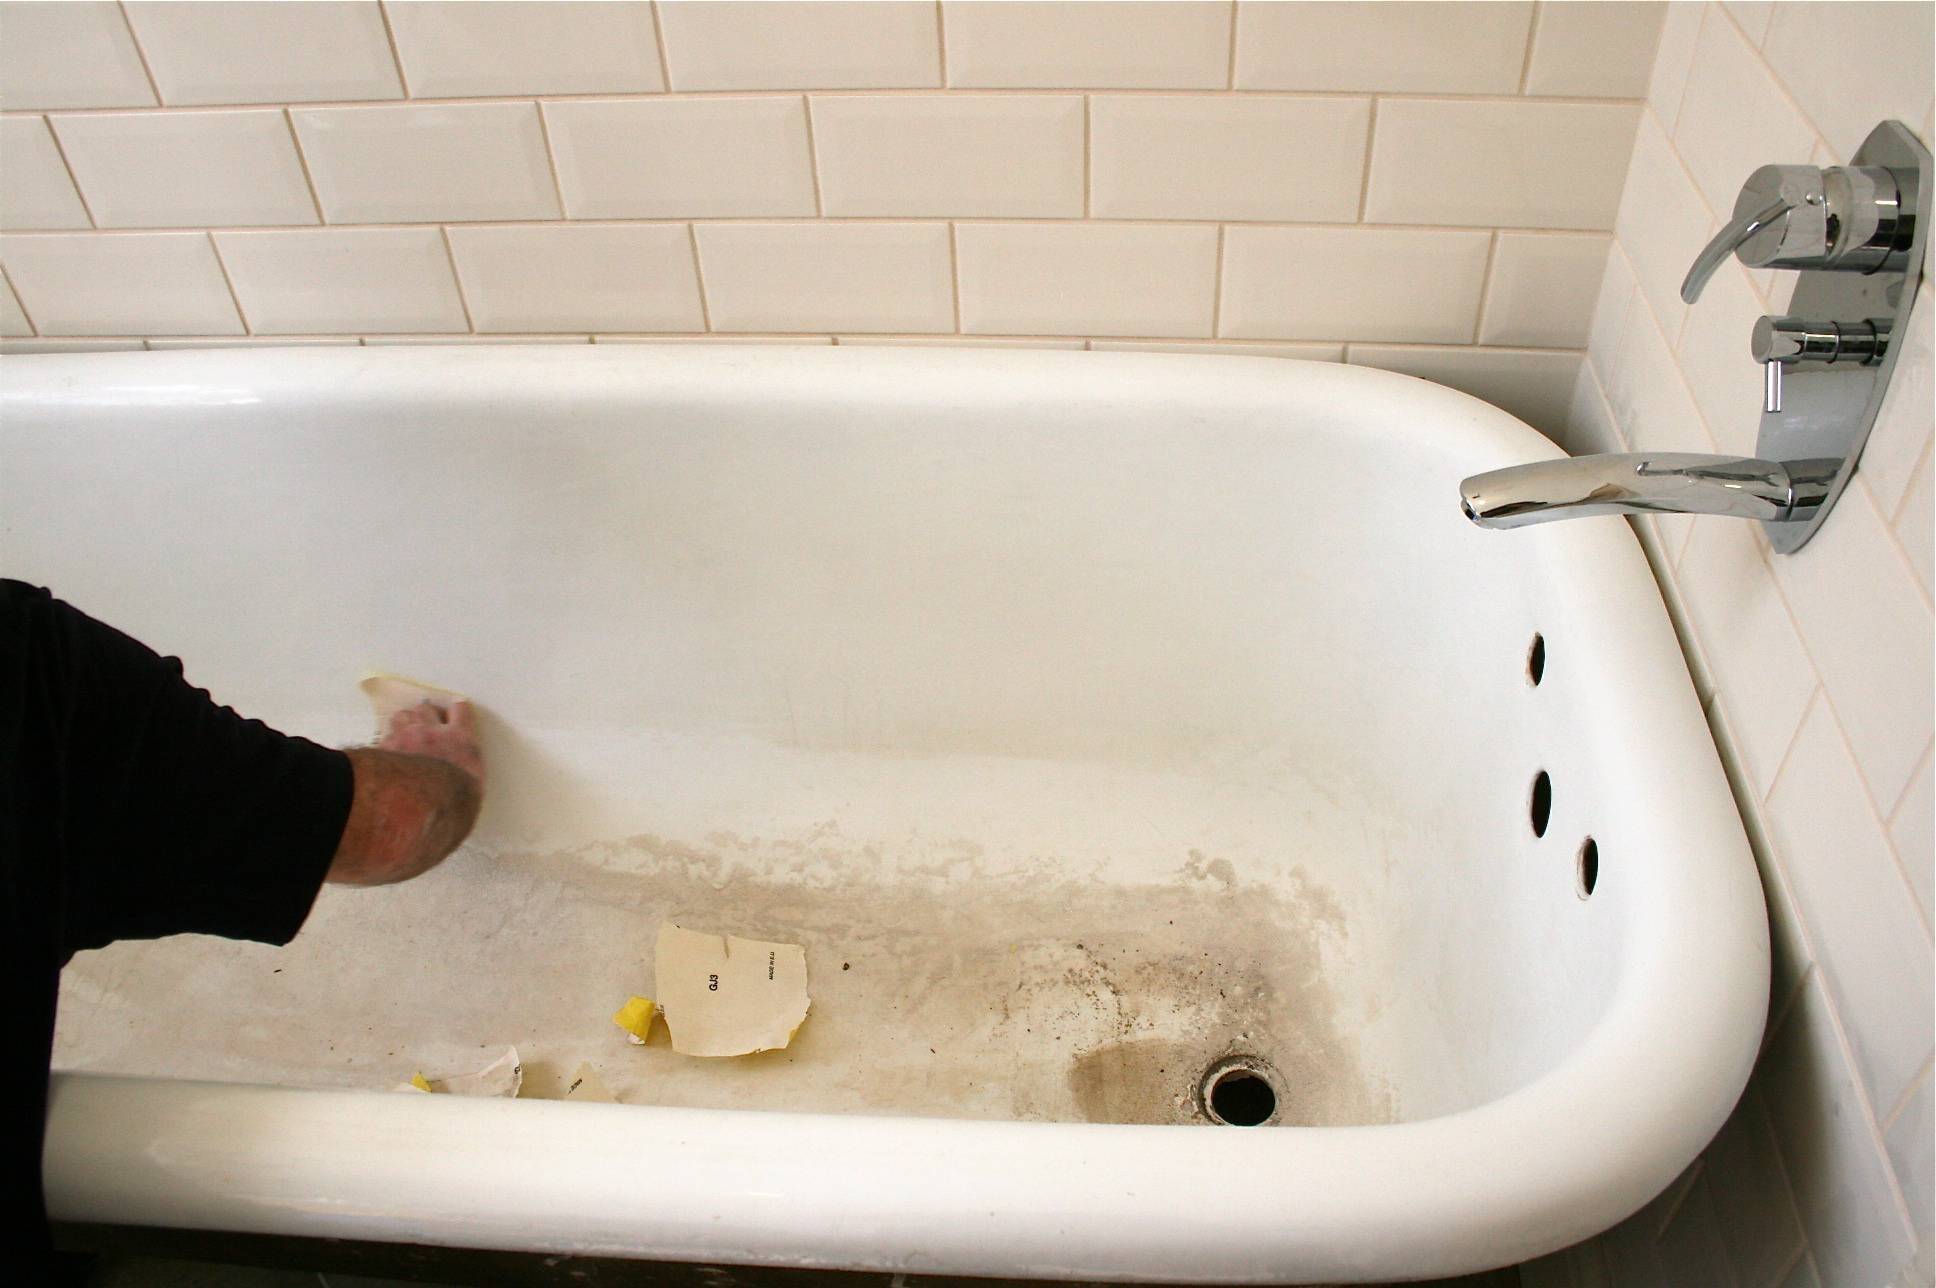 Восстановление ванны. Делаем своими руками или лучше вызвать мастера?